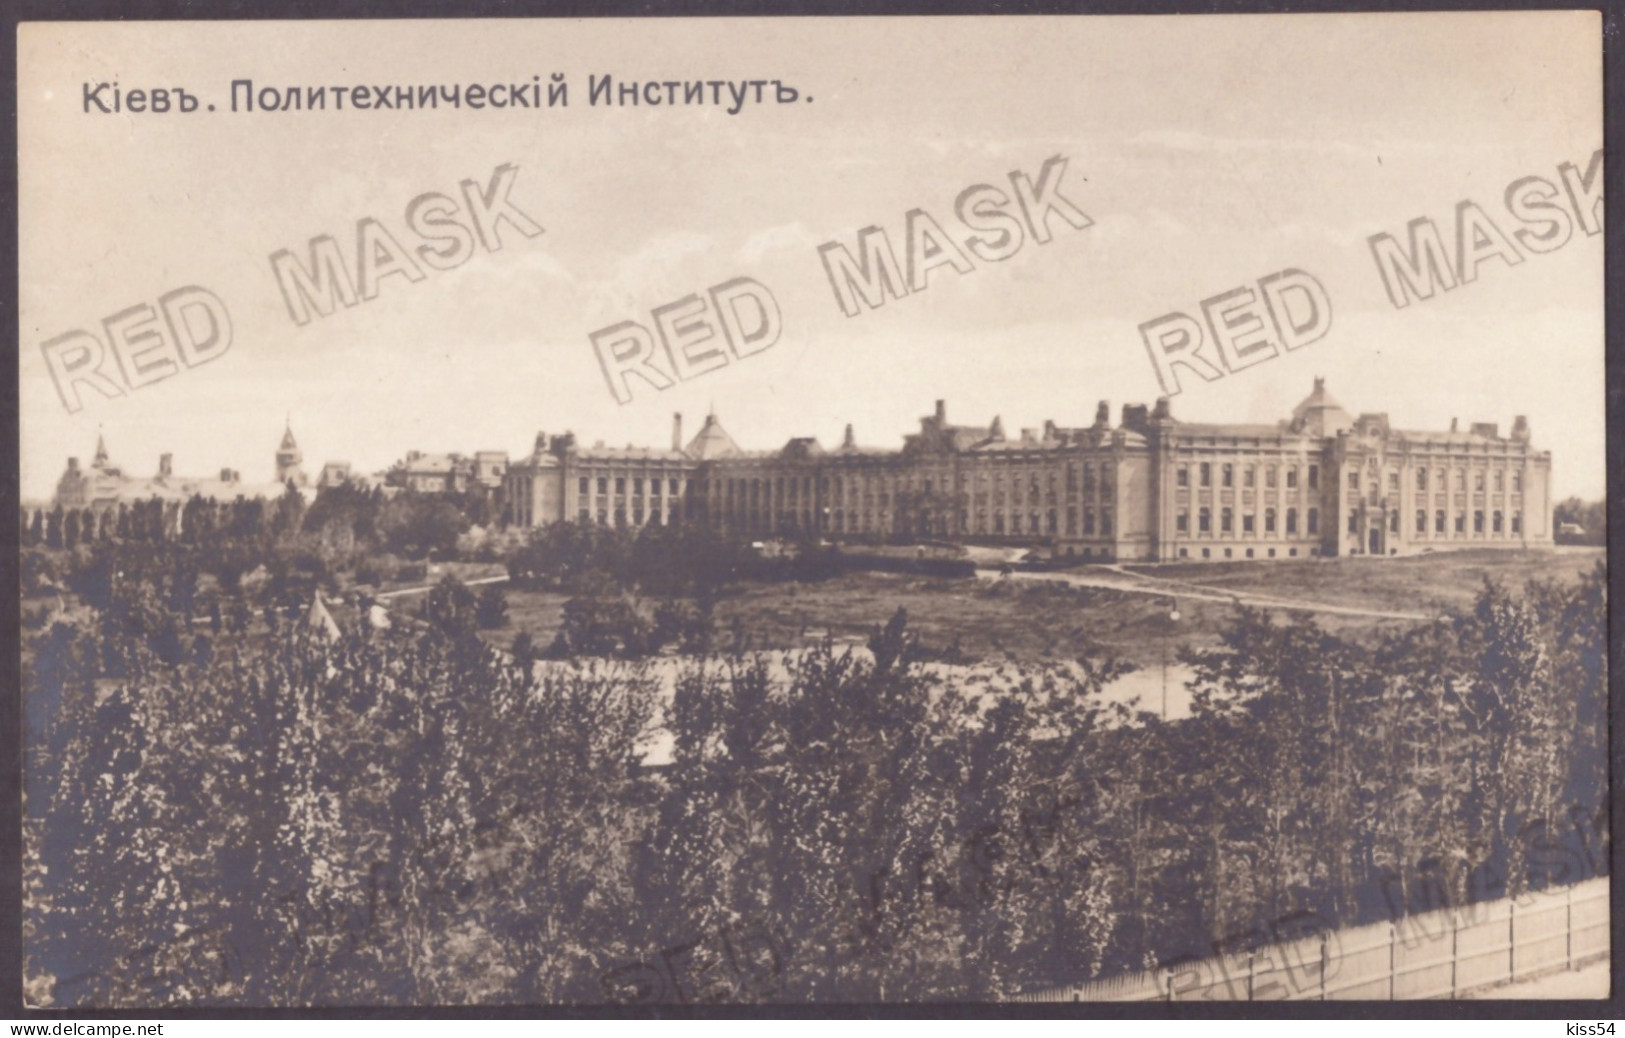 UK 61 - 23456 KIEV, POLYTECHNIC INSTITUTE, Ukraine - Old Postcard - Unused - Ukraine